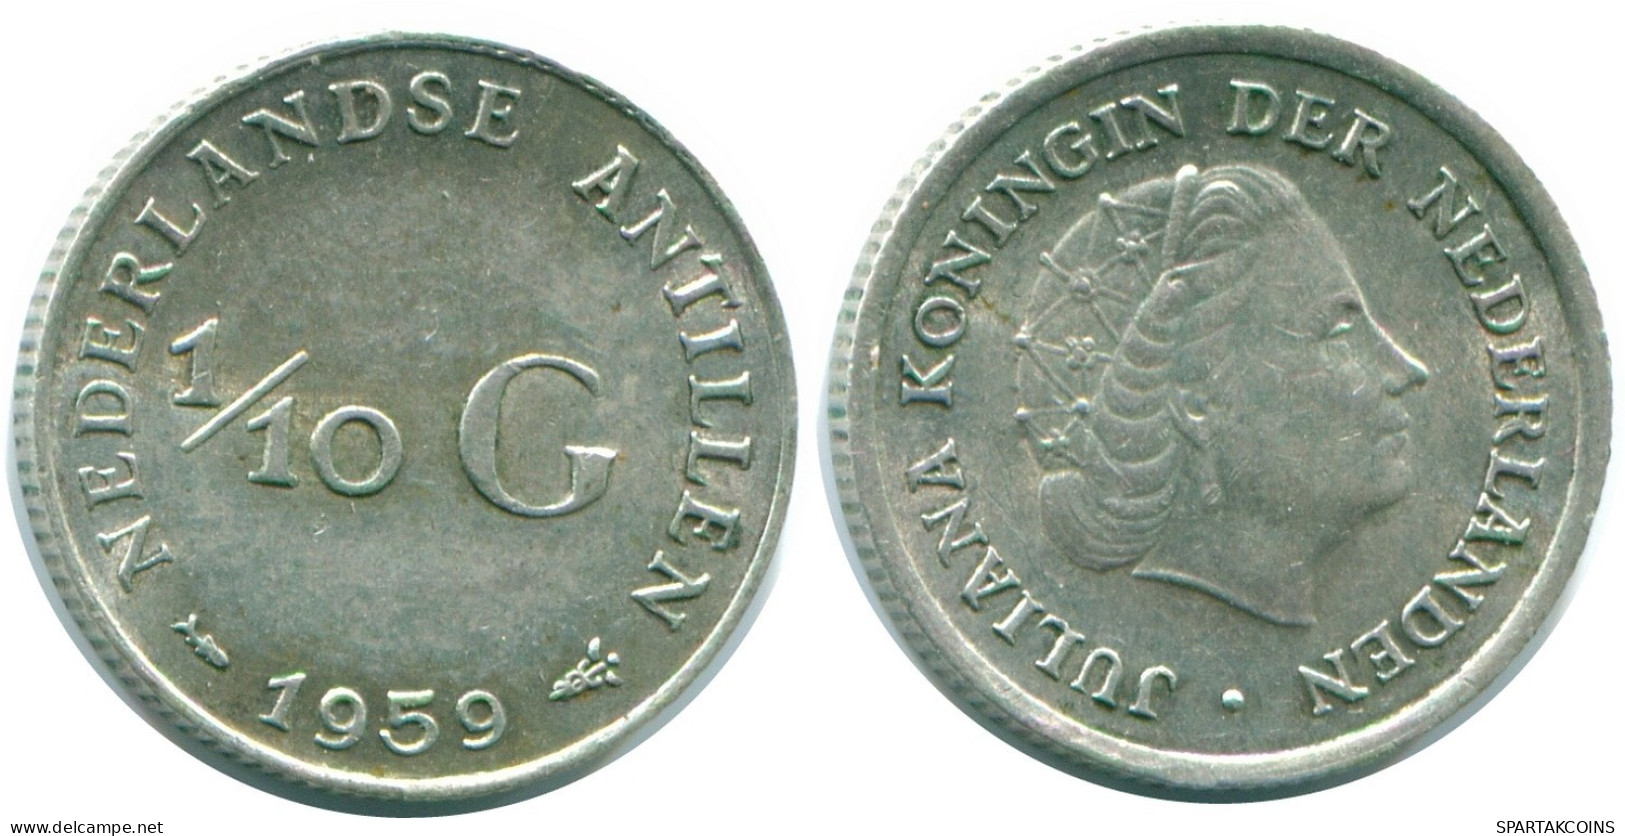 1/10 GULDEN 1959 NIEDERLÄNDISCHE ANTILLEN SILBER Koloniale Münze #NL12198.3.D.A - Antilles Néerlandaises